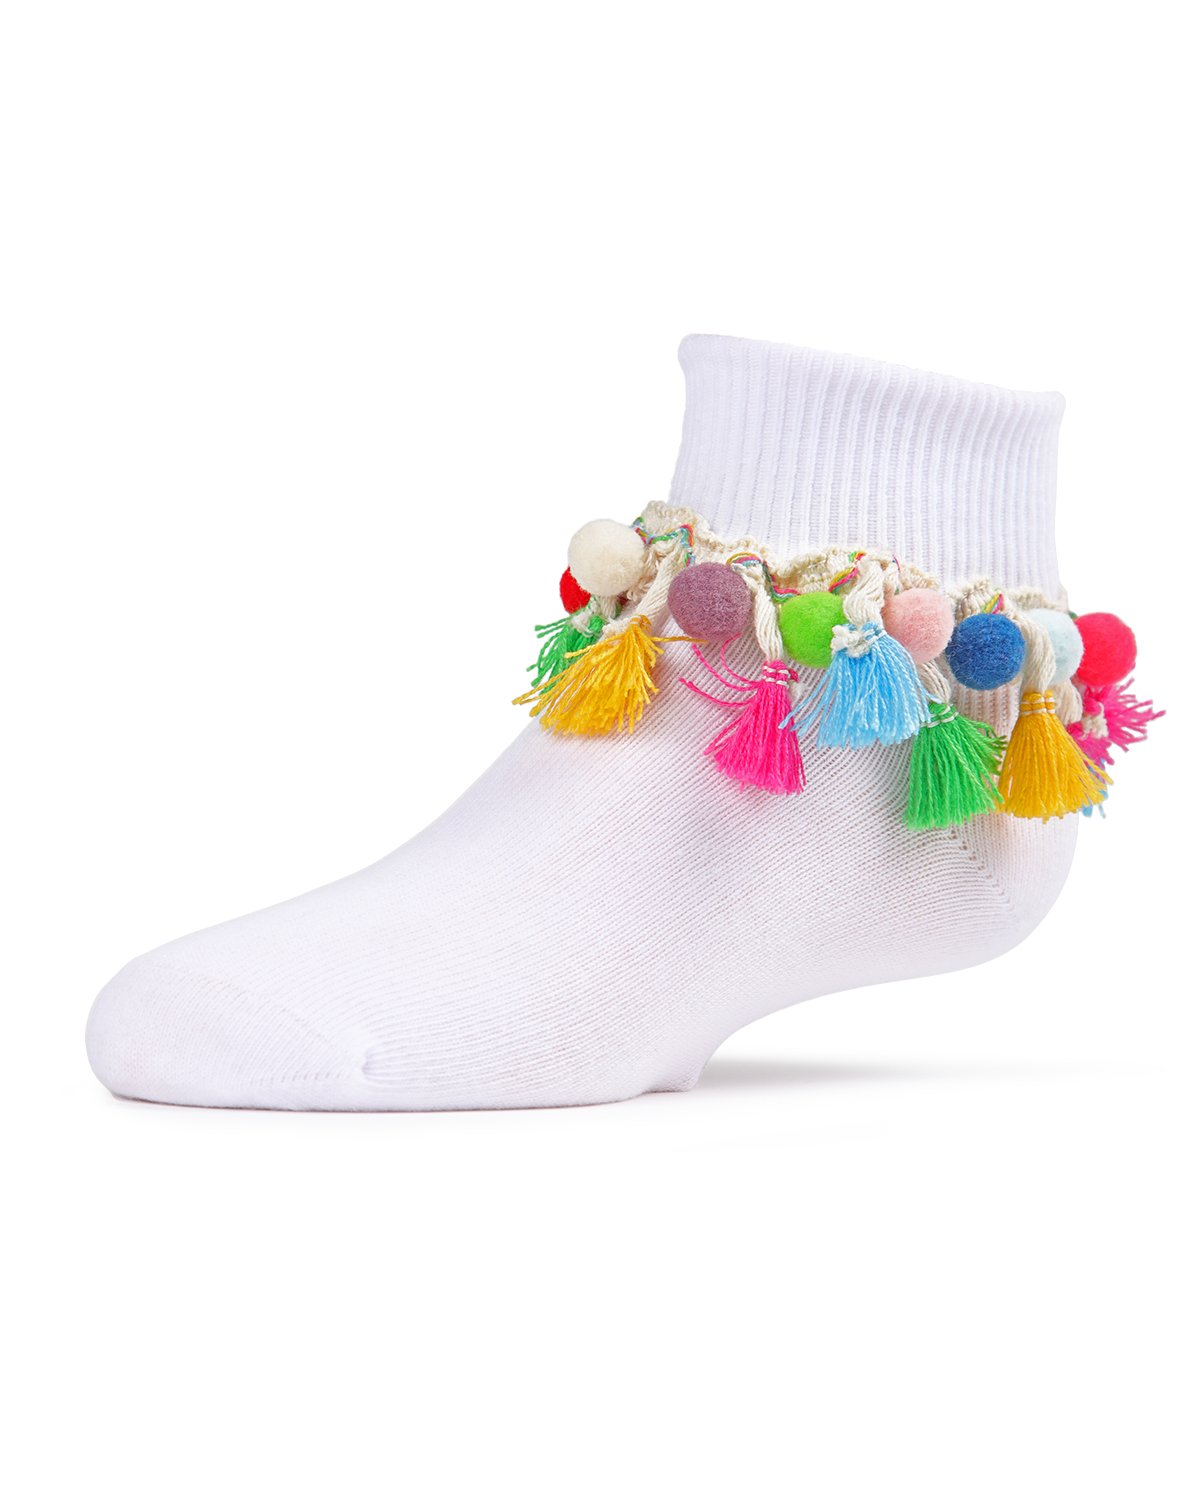 Pom-Pom-Palooza Girls Ankle Socks